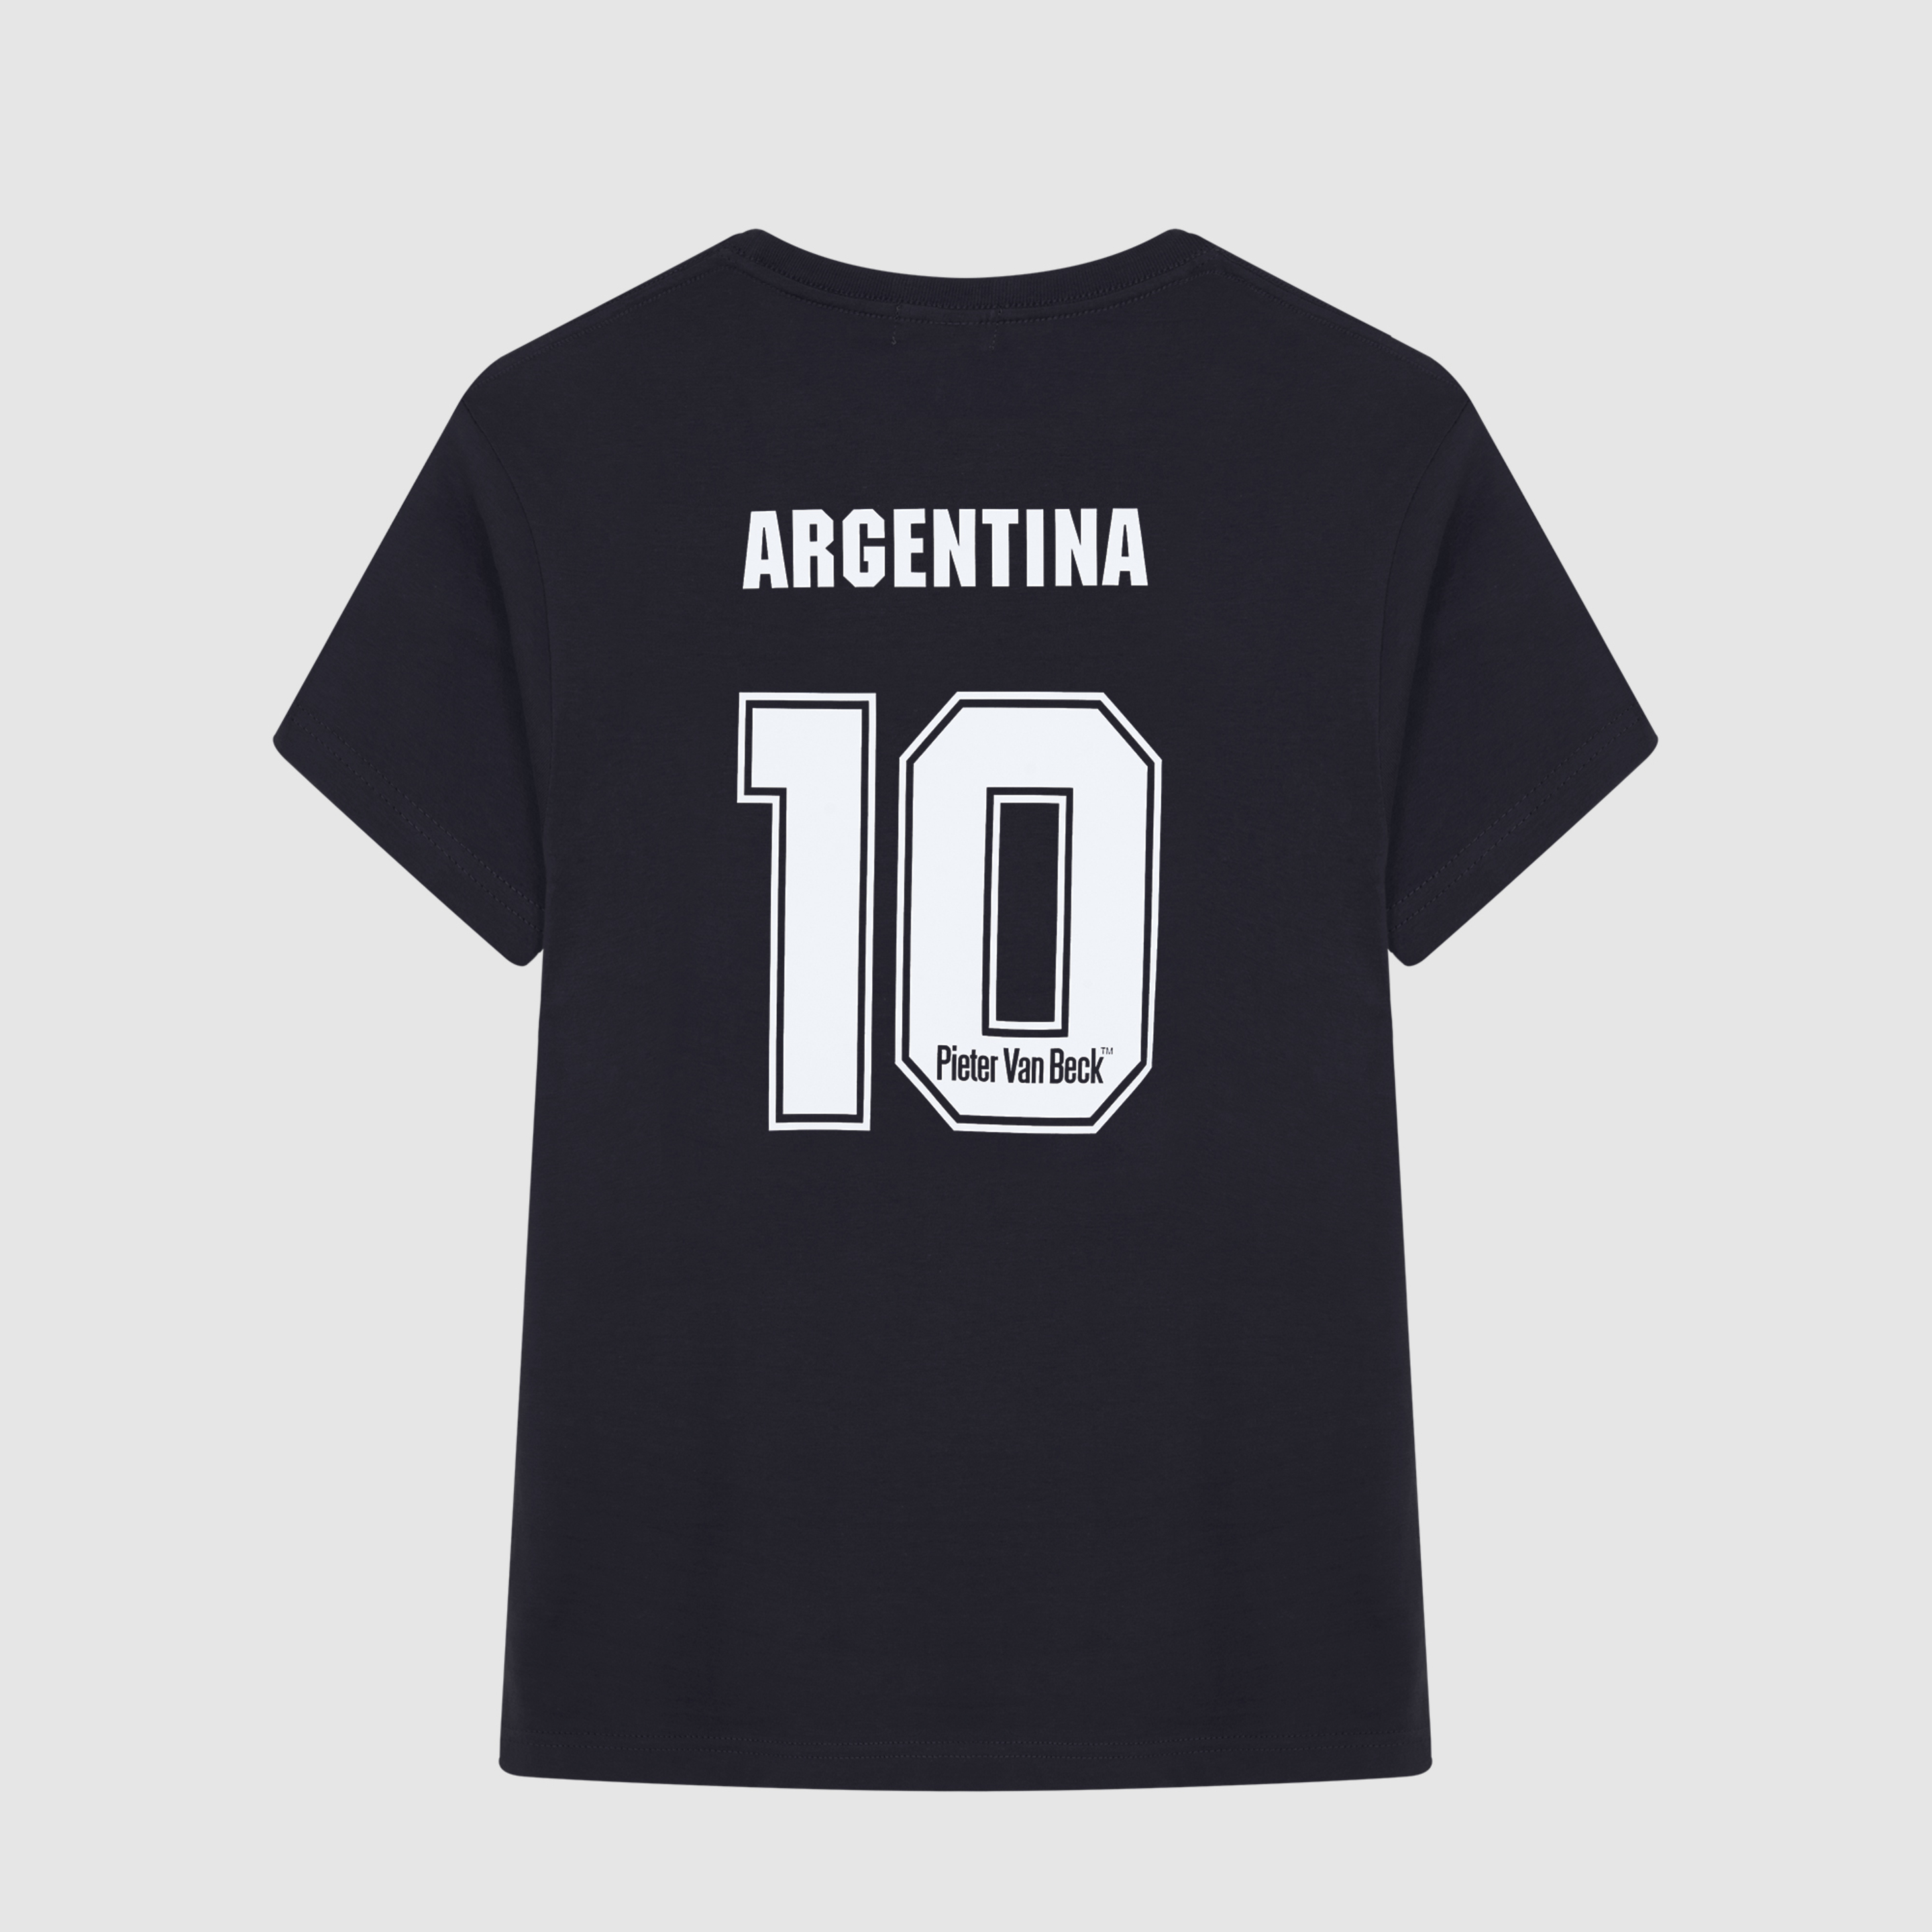 Camiseta Pieter Van Beck Winners Argentina